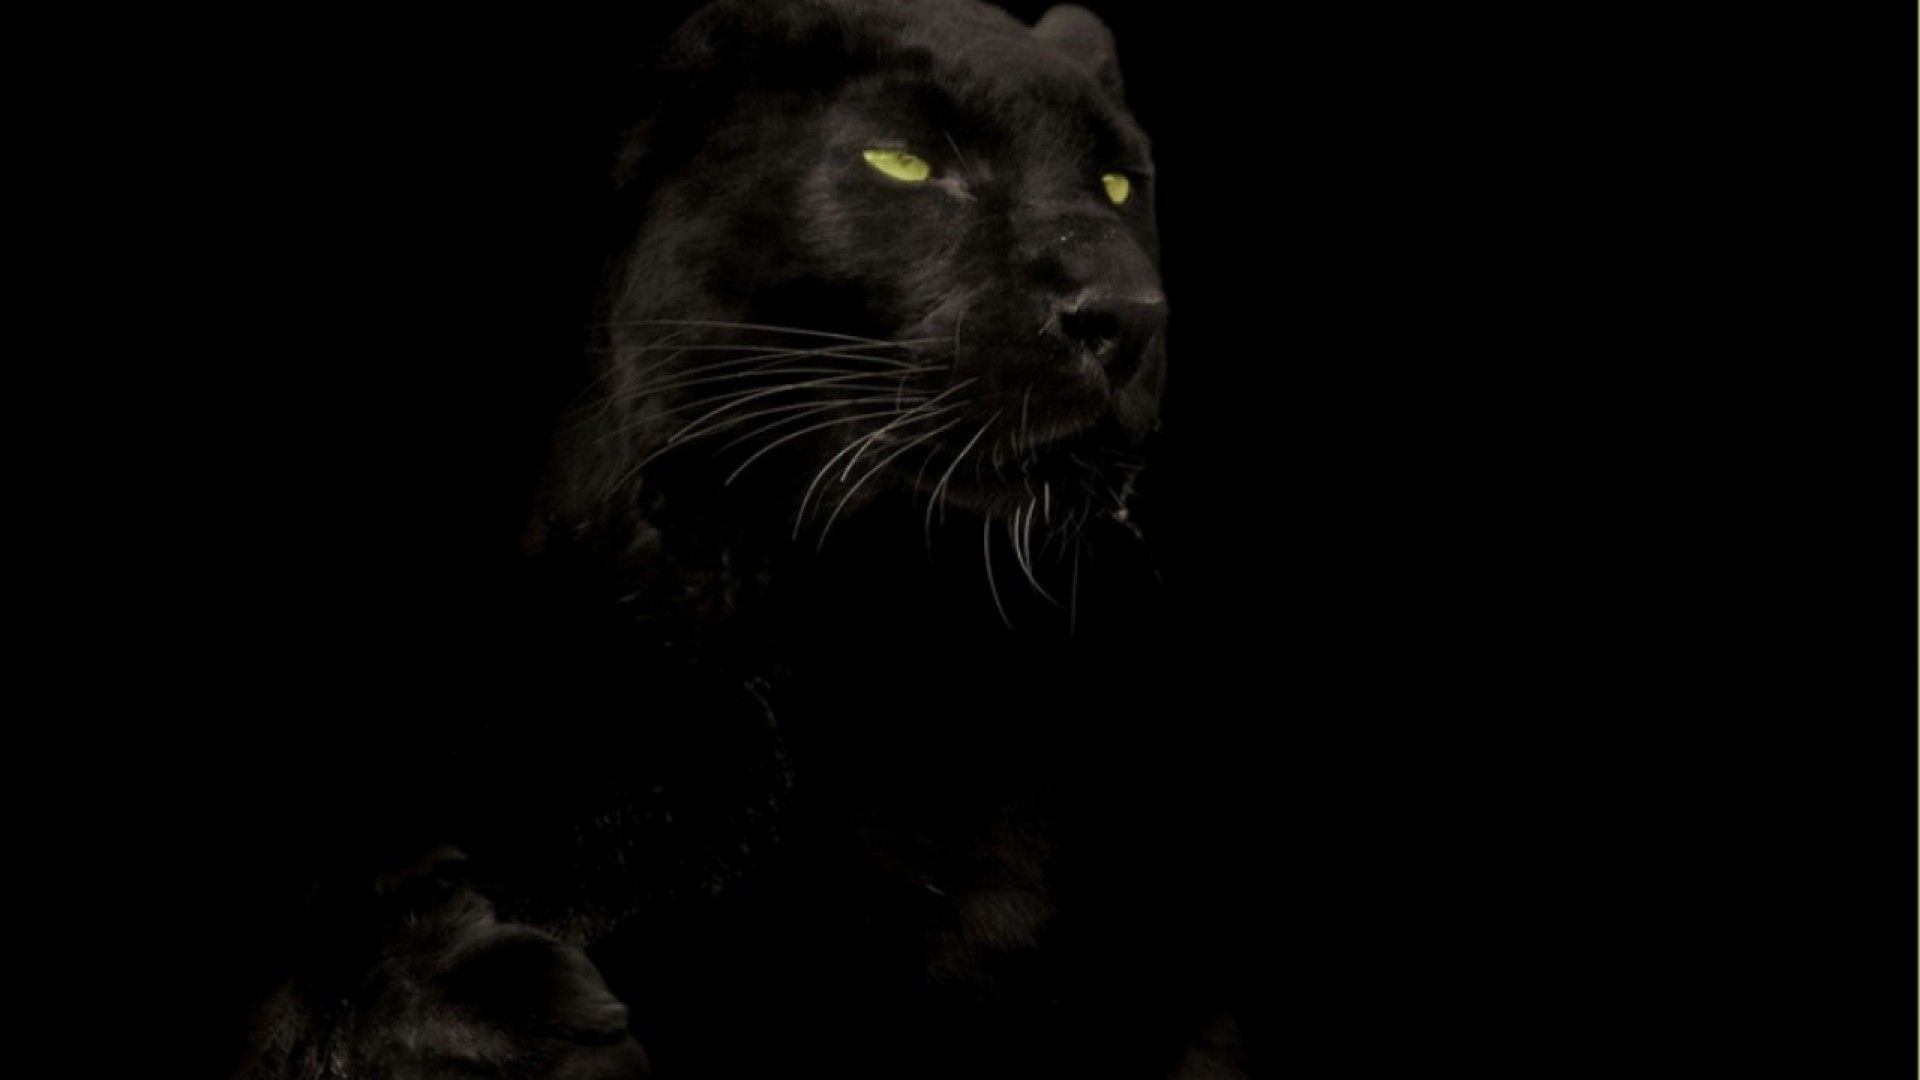 Wallpaperres.com | Black Panther Big Cat Wallpaper HD 02